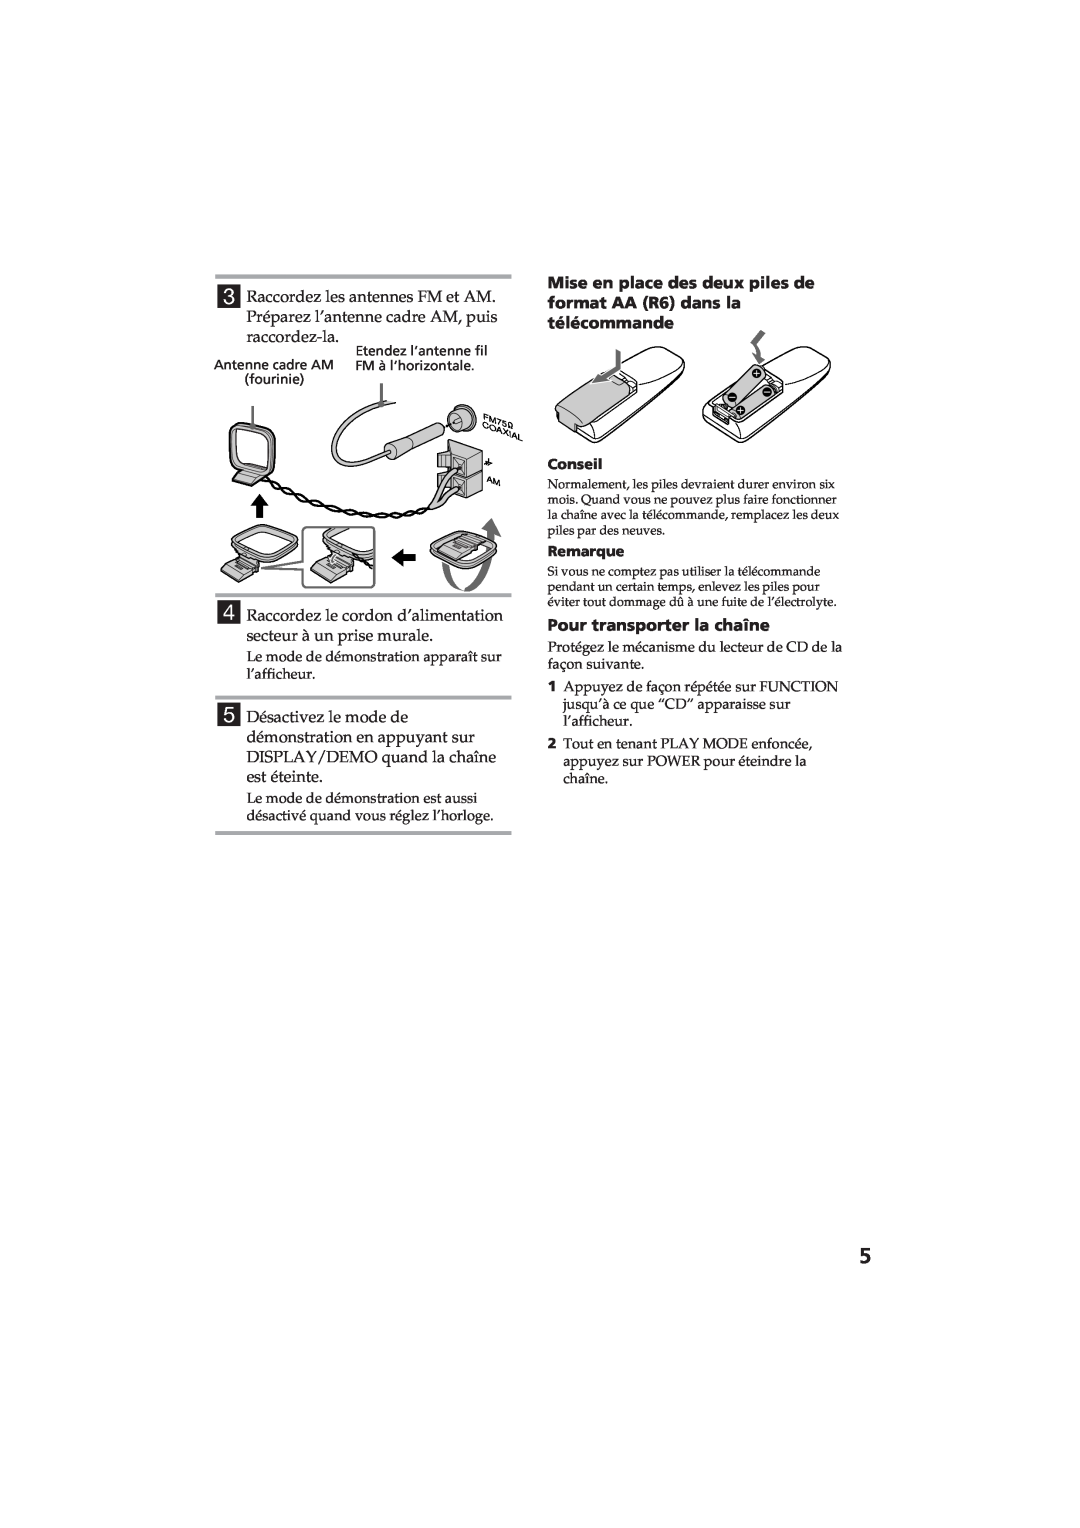 Sony MHC-RX80 manual Pour transporter la chaîne 